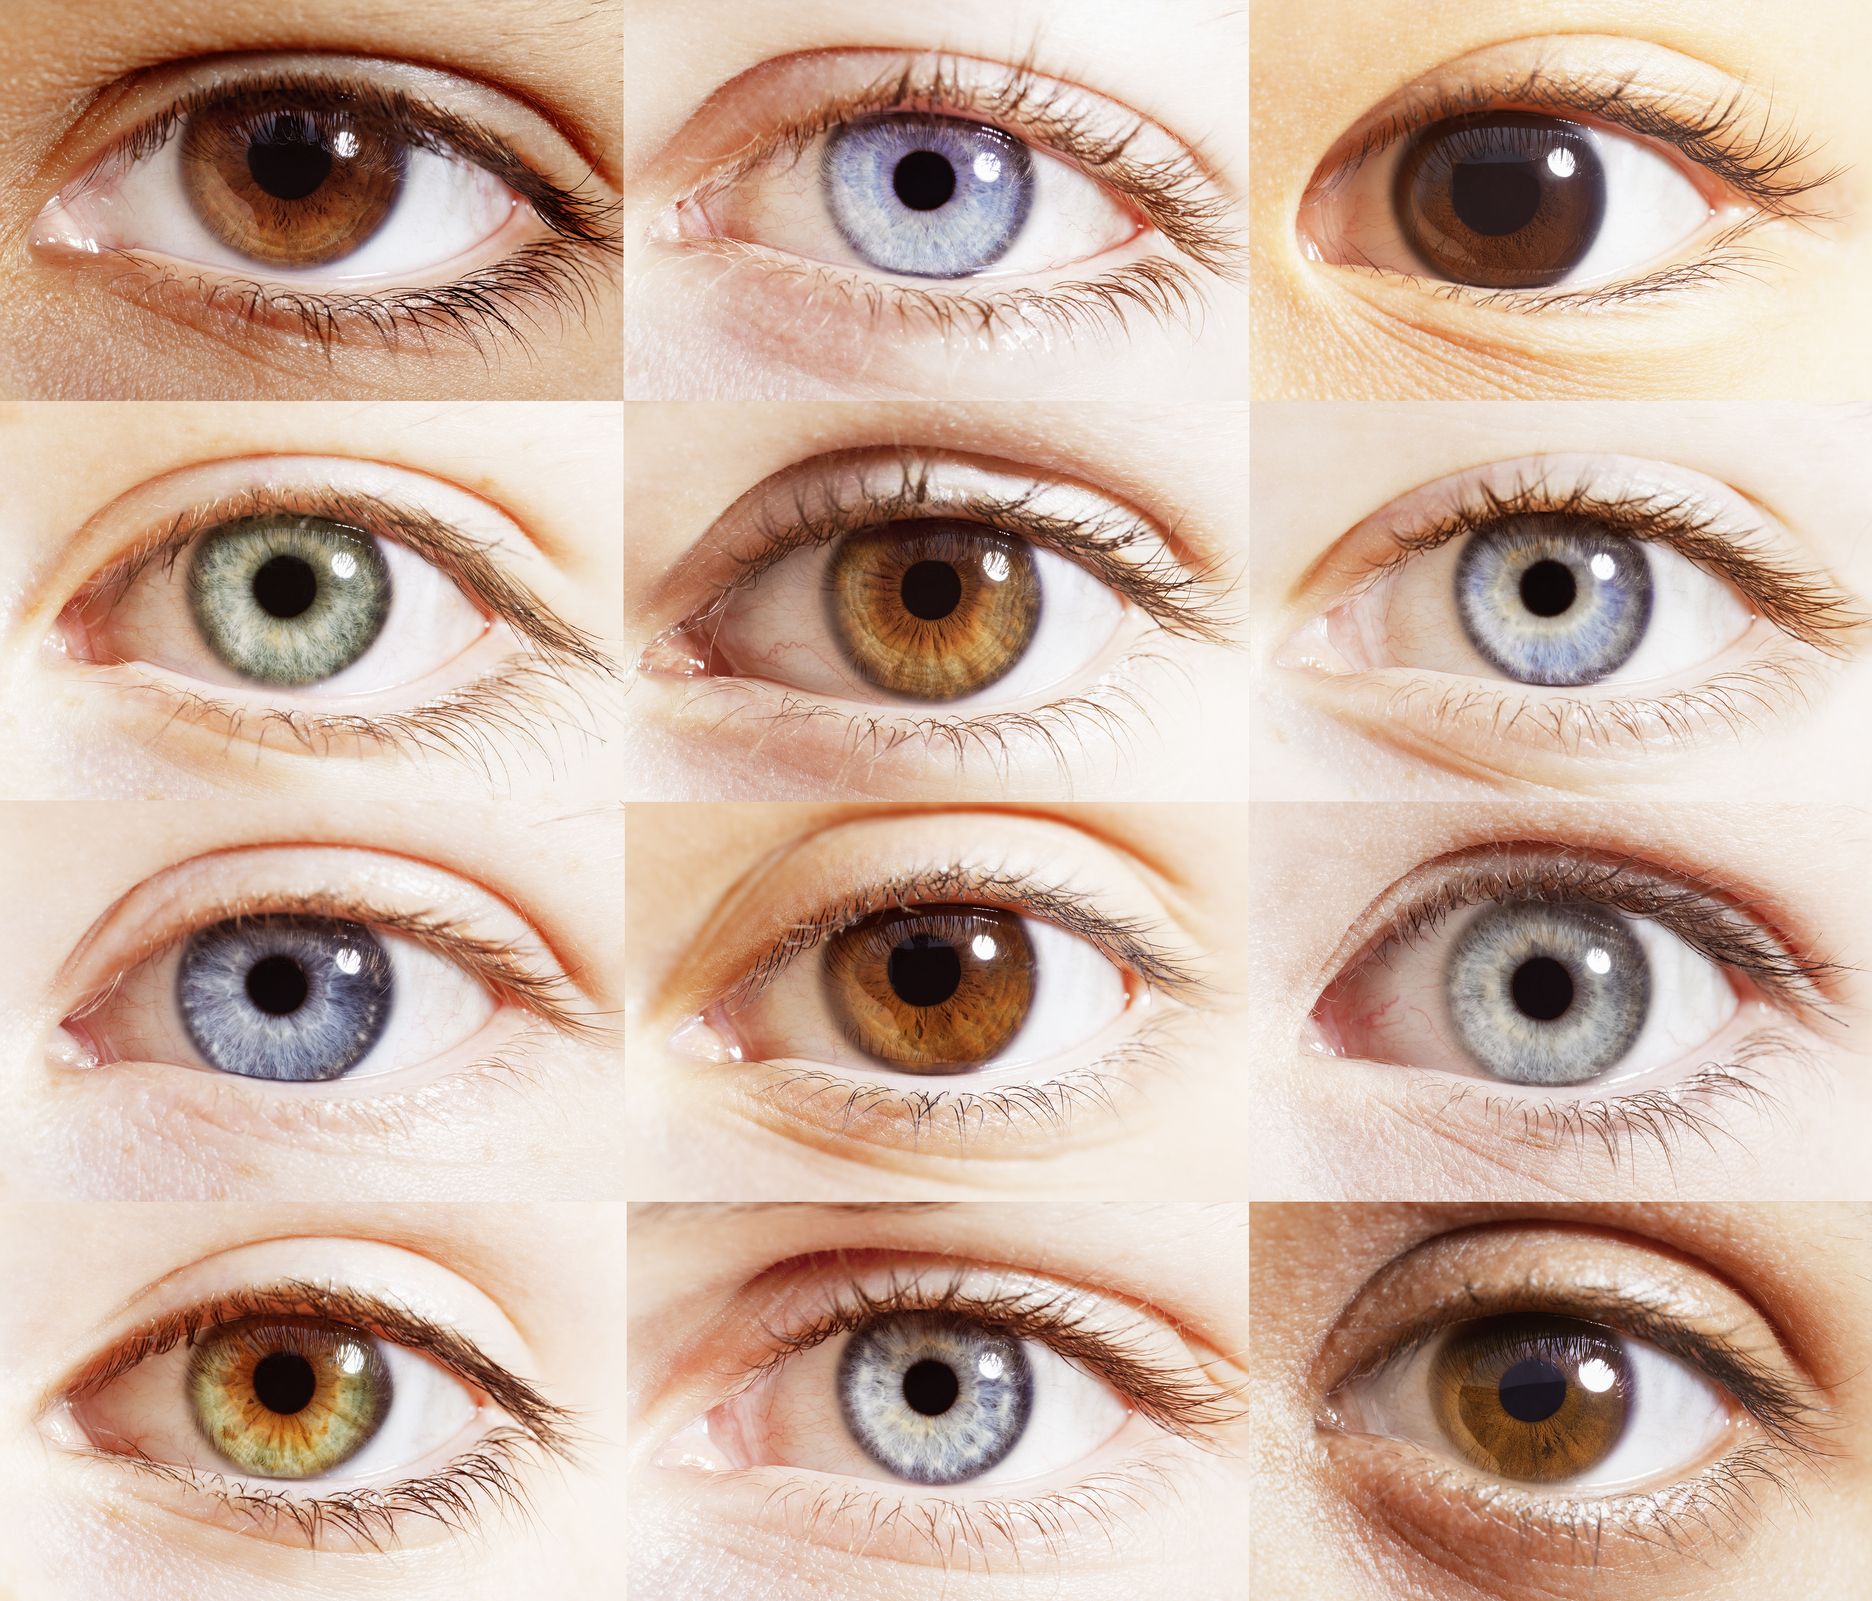 実は 目の色 は誰でも同じ その科学的な根拠とは